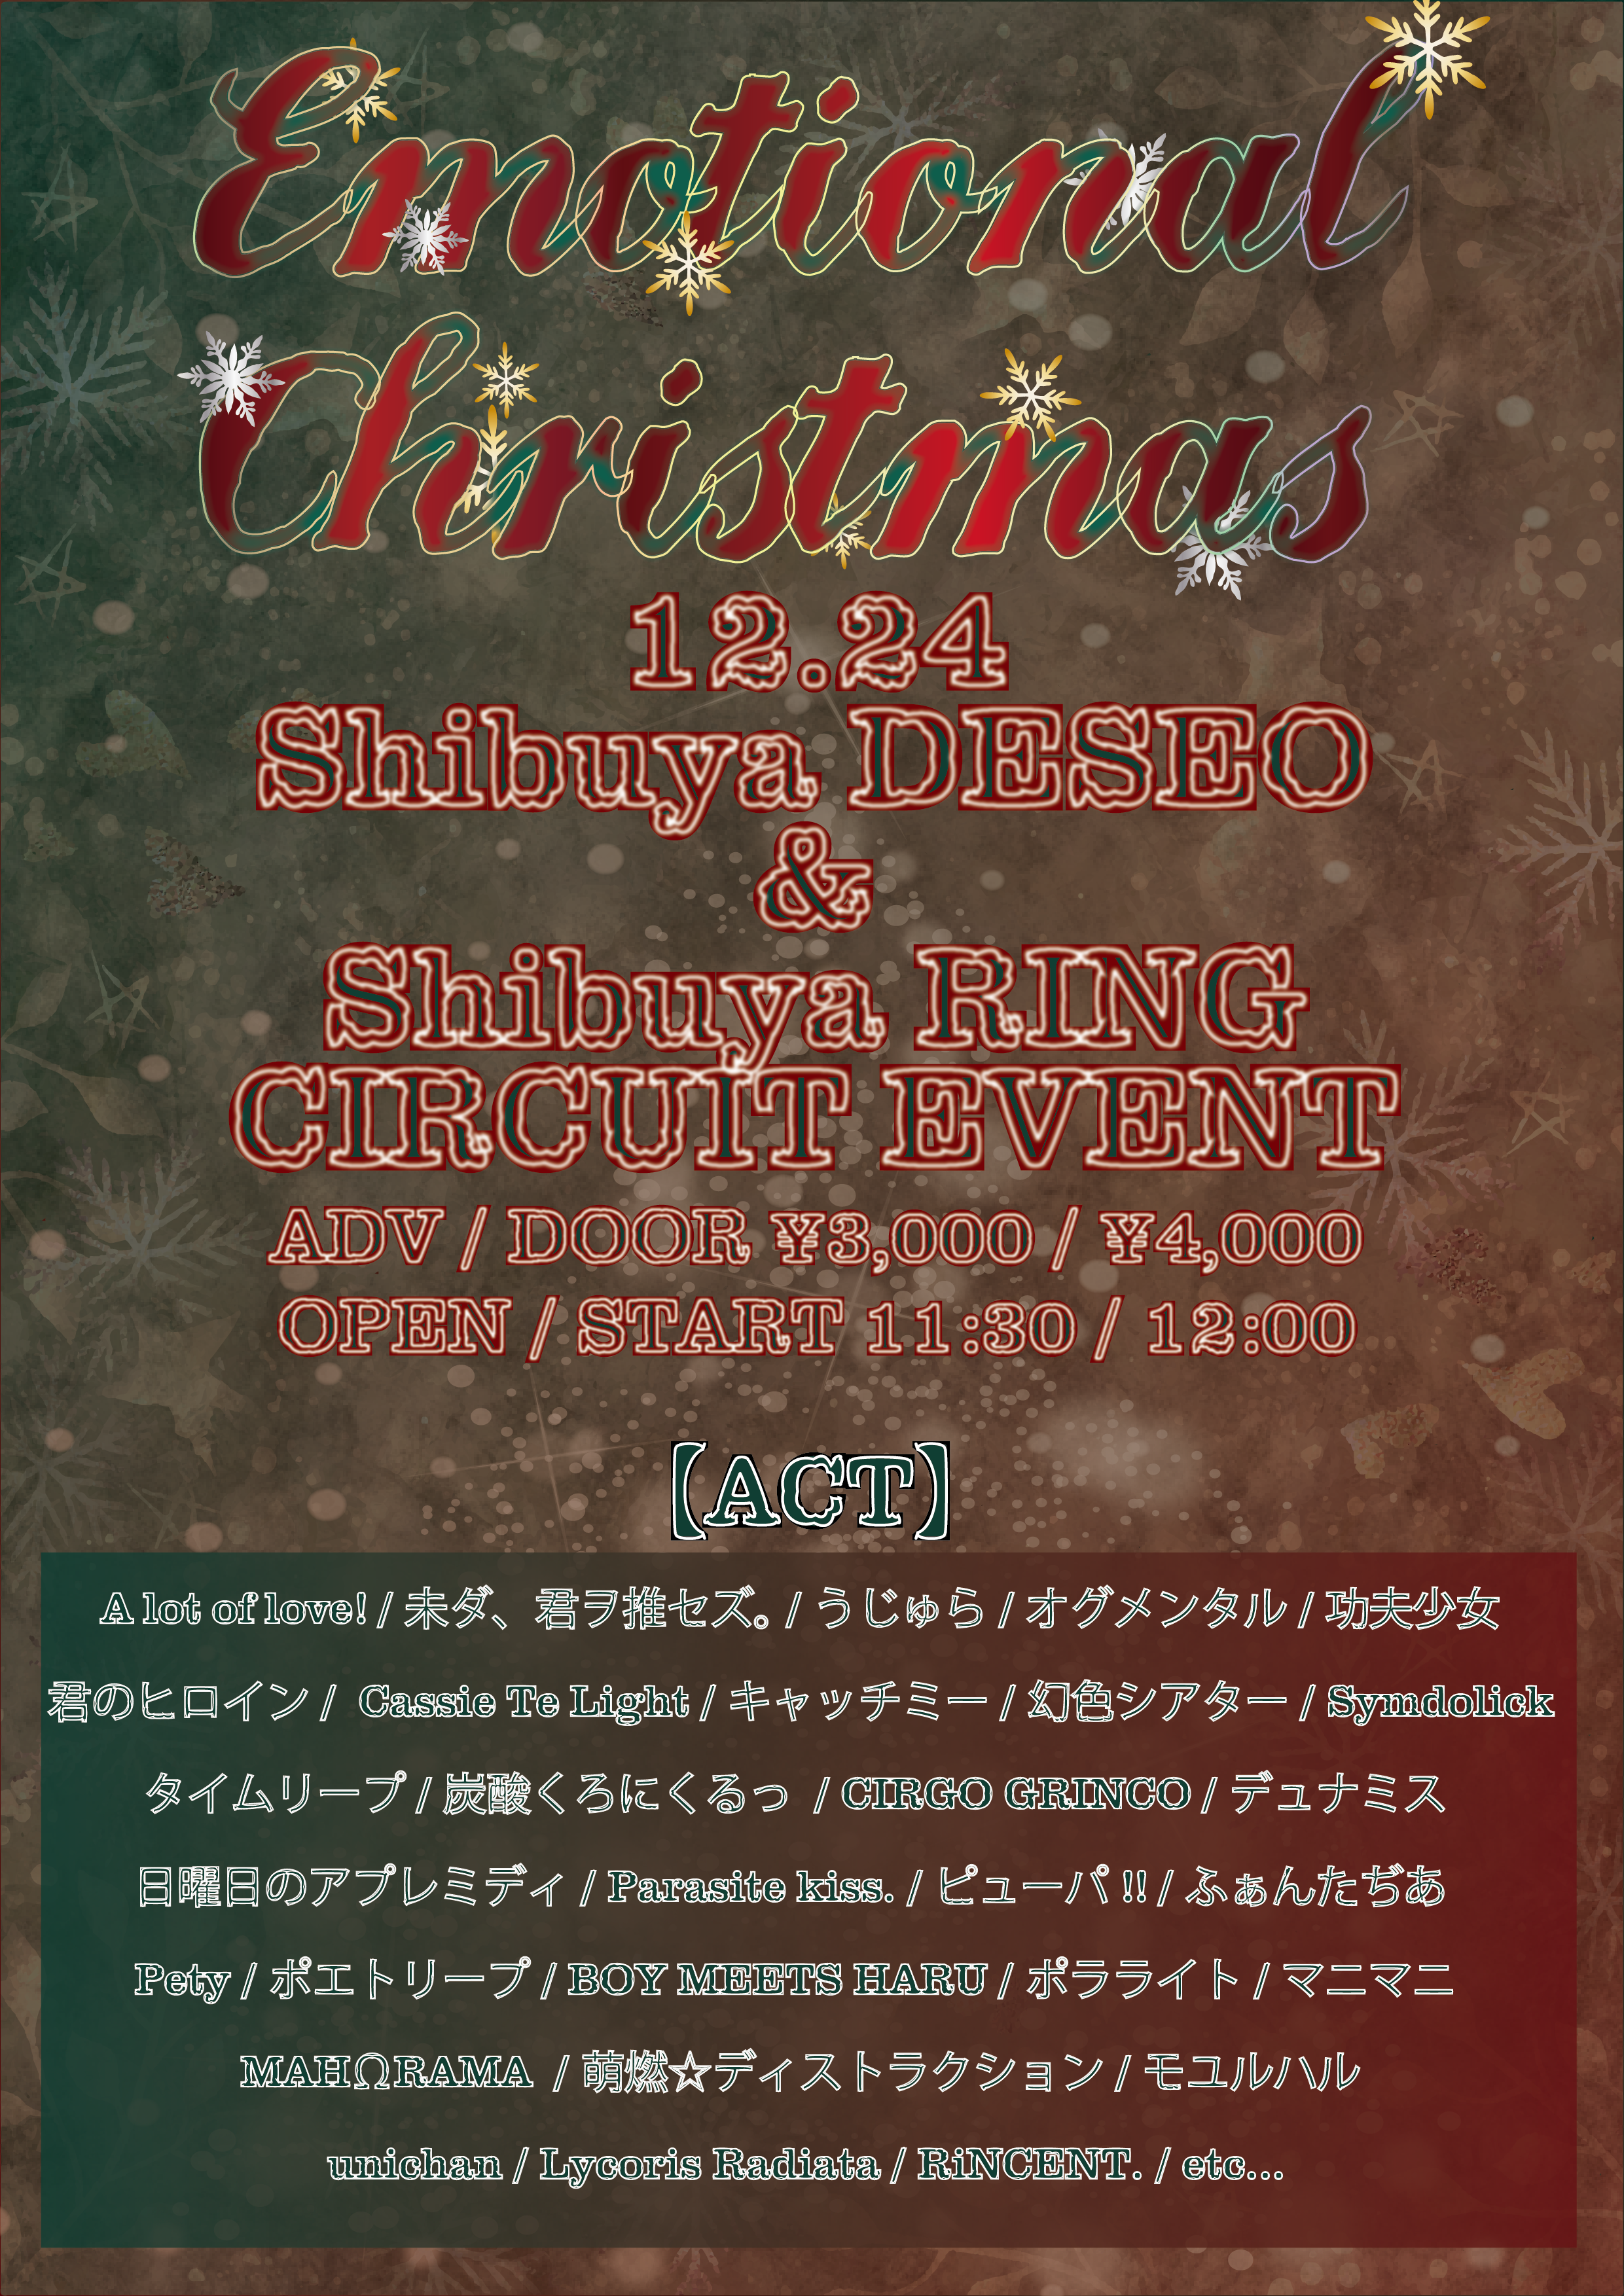 【東京】Emotional Christmas